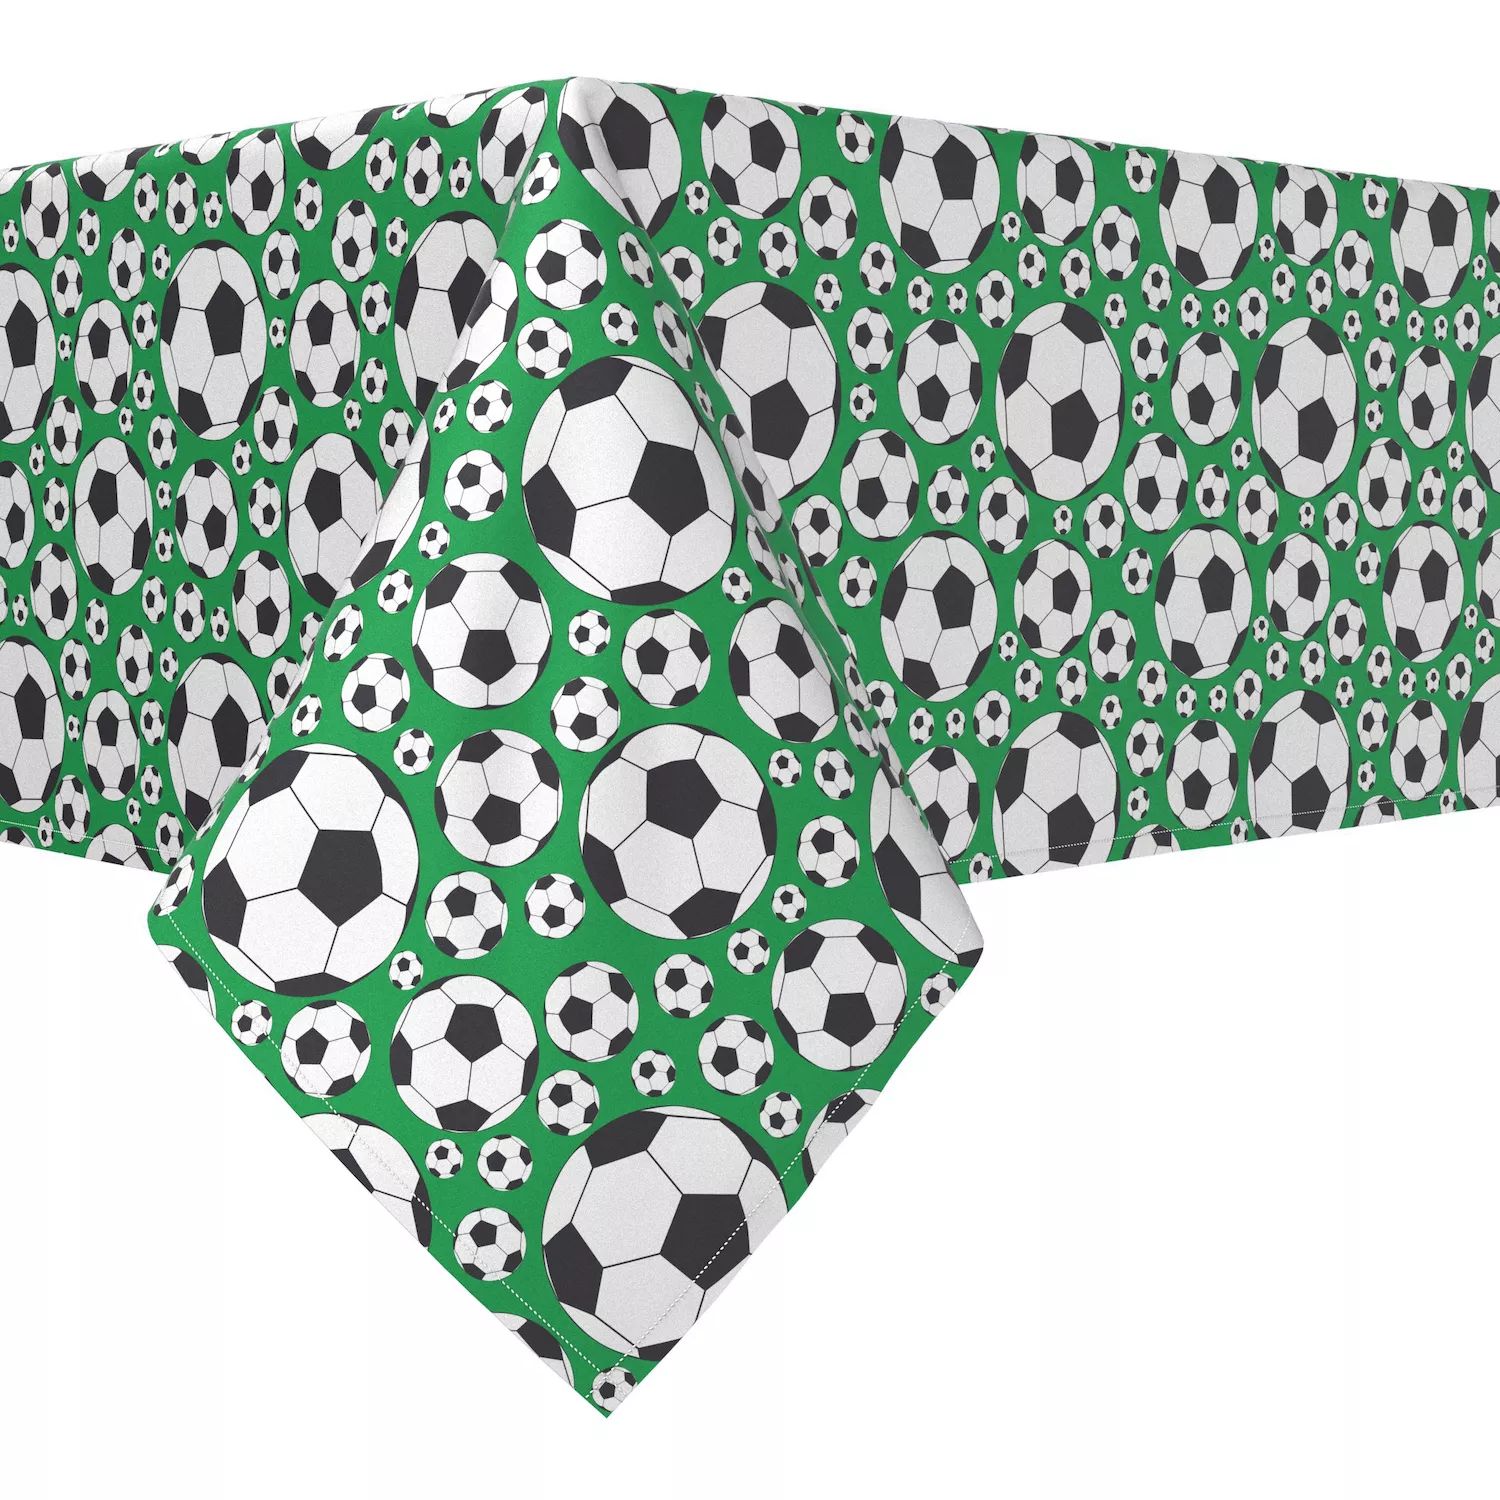 

Прямоугольная скатерть, 100 % хлопок, 52x84 дюйма, зеленые футбольные мячи